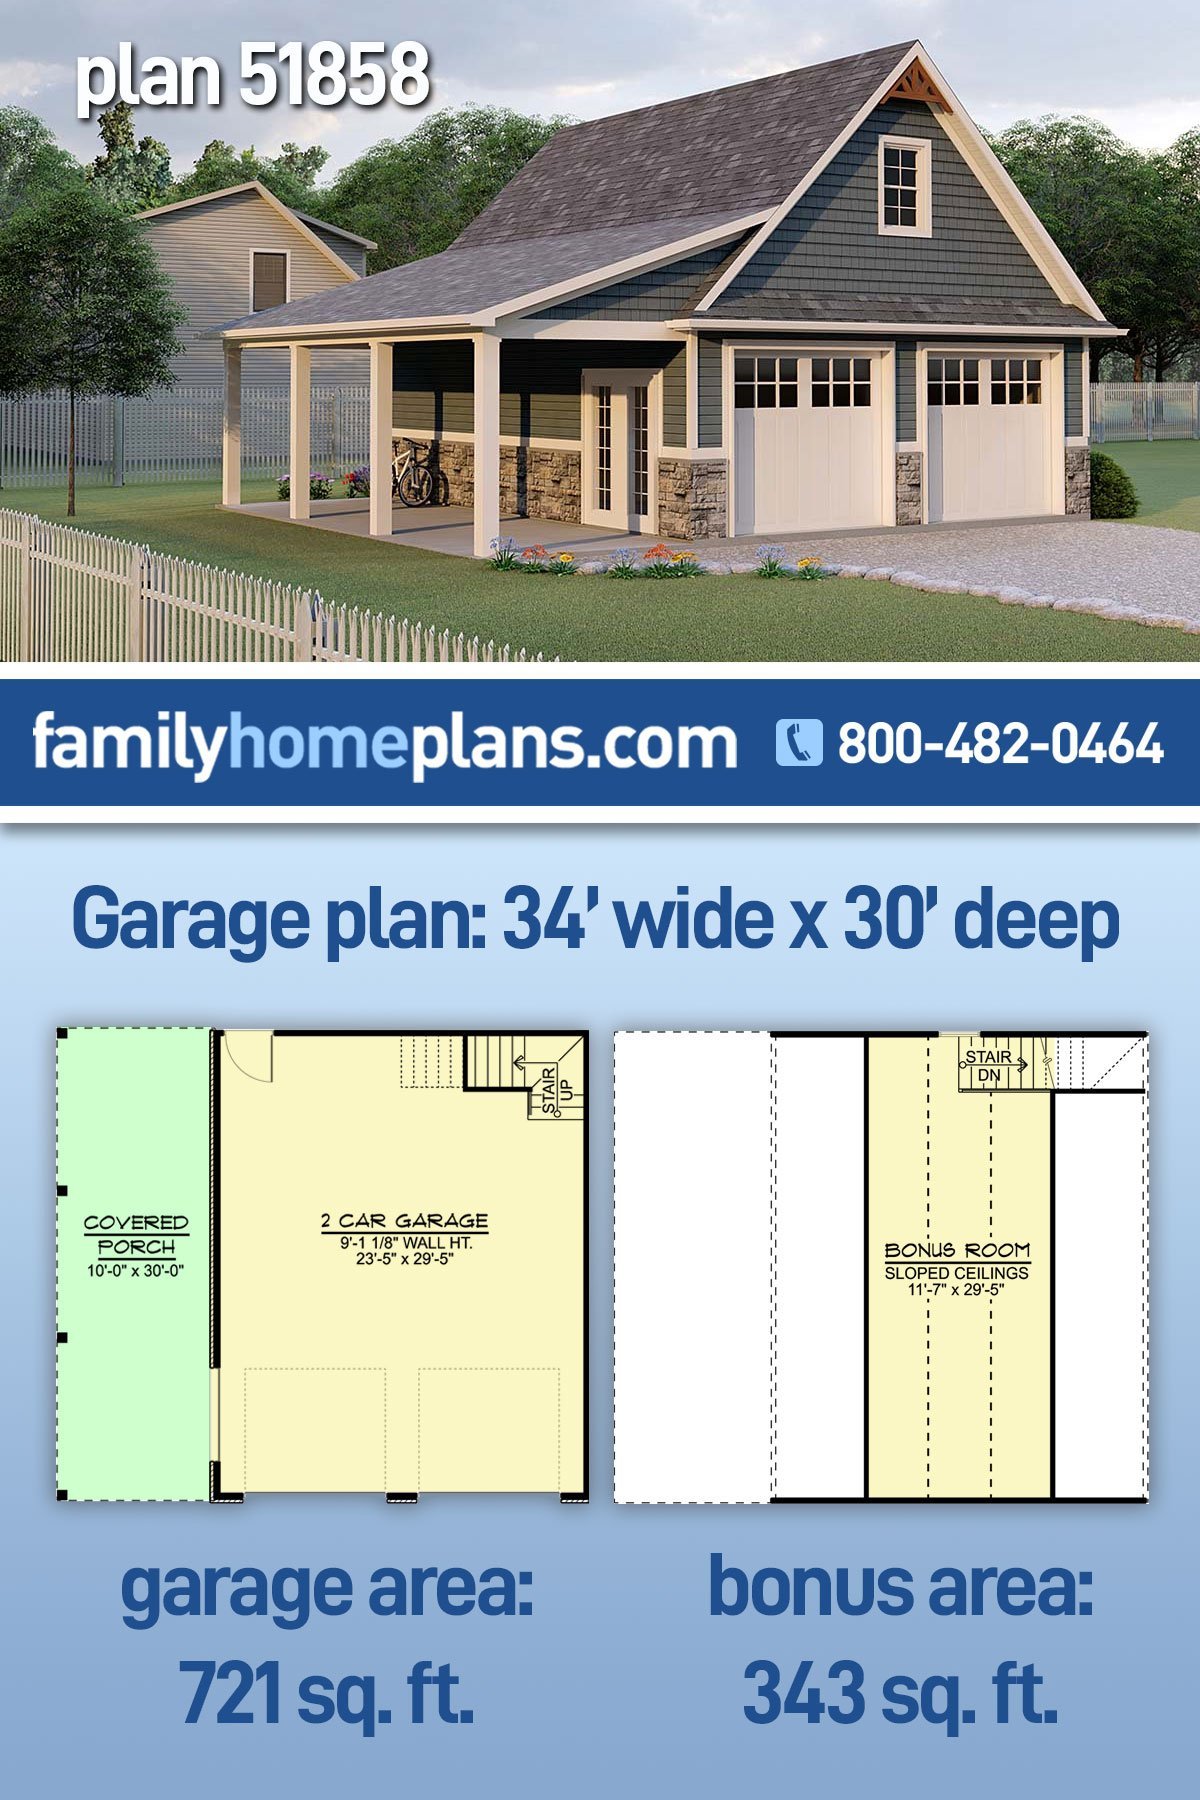 Garage Plan 51858 - 2 Car Garage Apartment